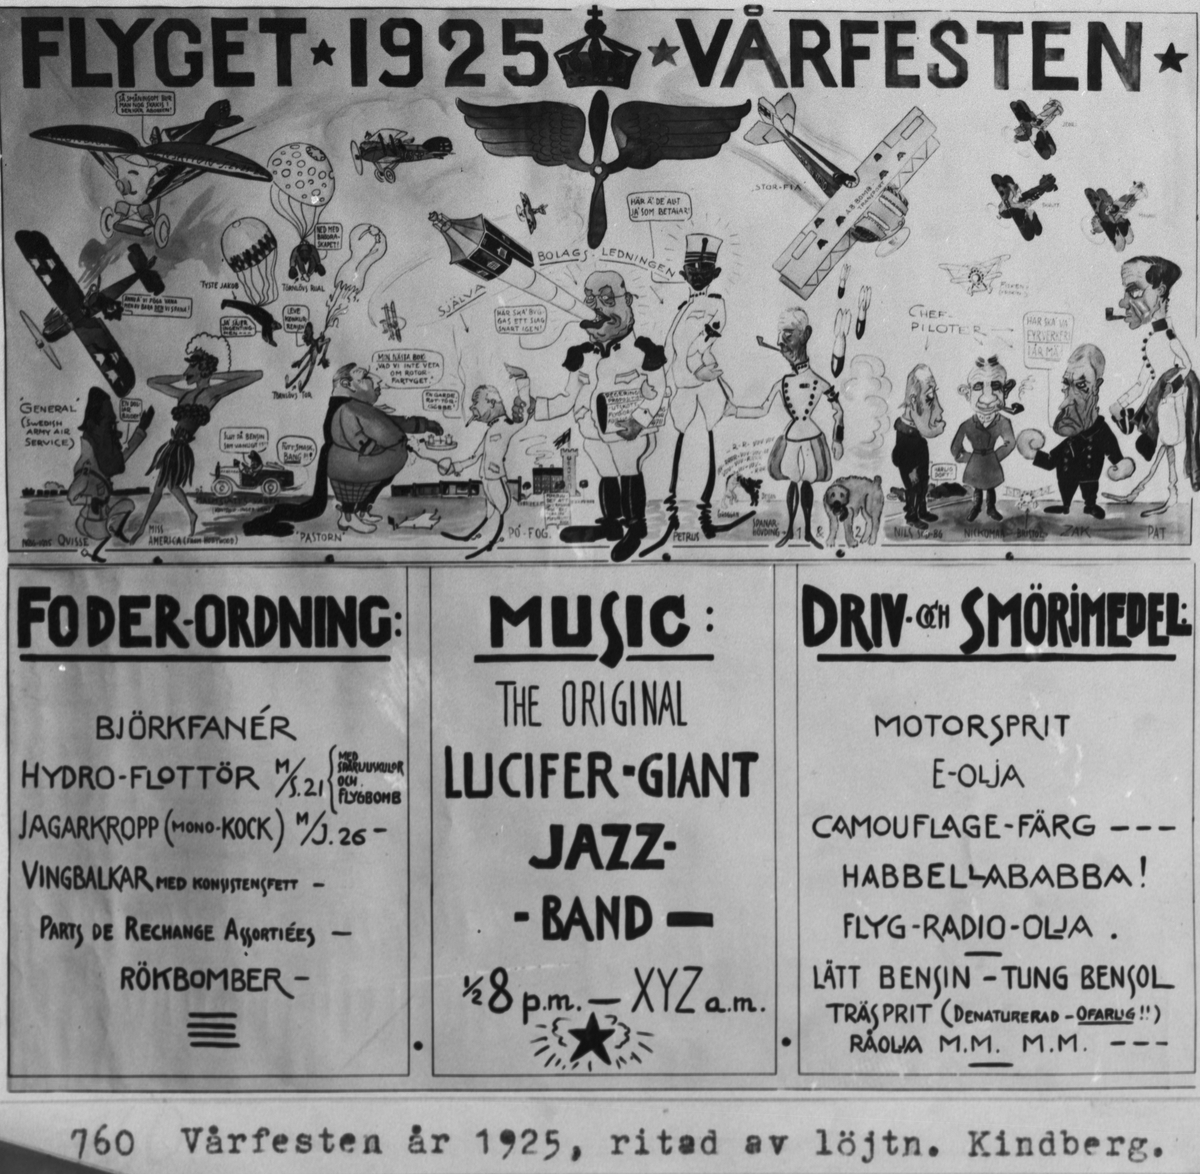 Vårfesten 1925. Affisch med karikatyrer.  Affisch för flygets vårfest på Malmen år 1925, tecknad av Nils Kindberg.  Karikatyrer av personal vid Flygkompaniet på Malmen samt program för festen.  Avfotograferad från affisch.